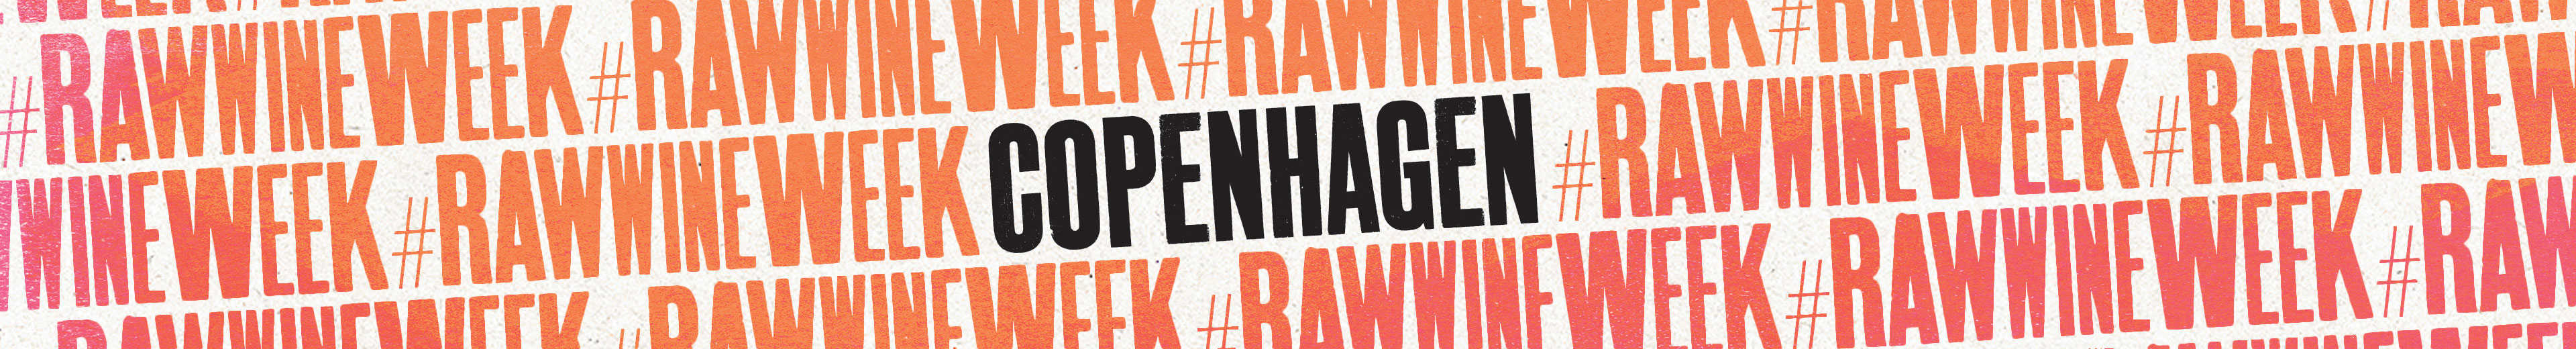 rawwineweek banner image